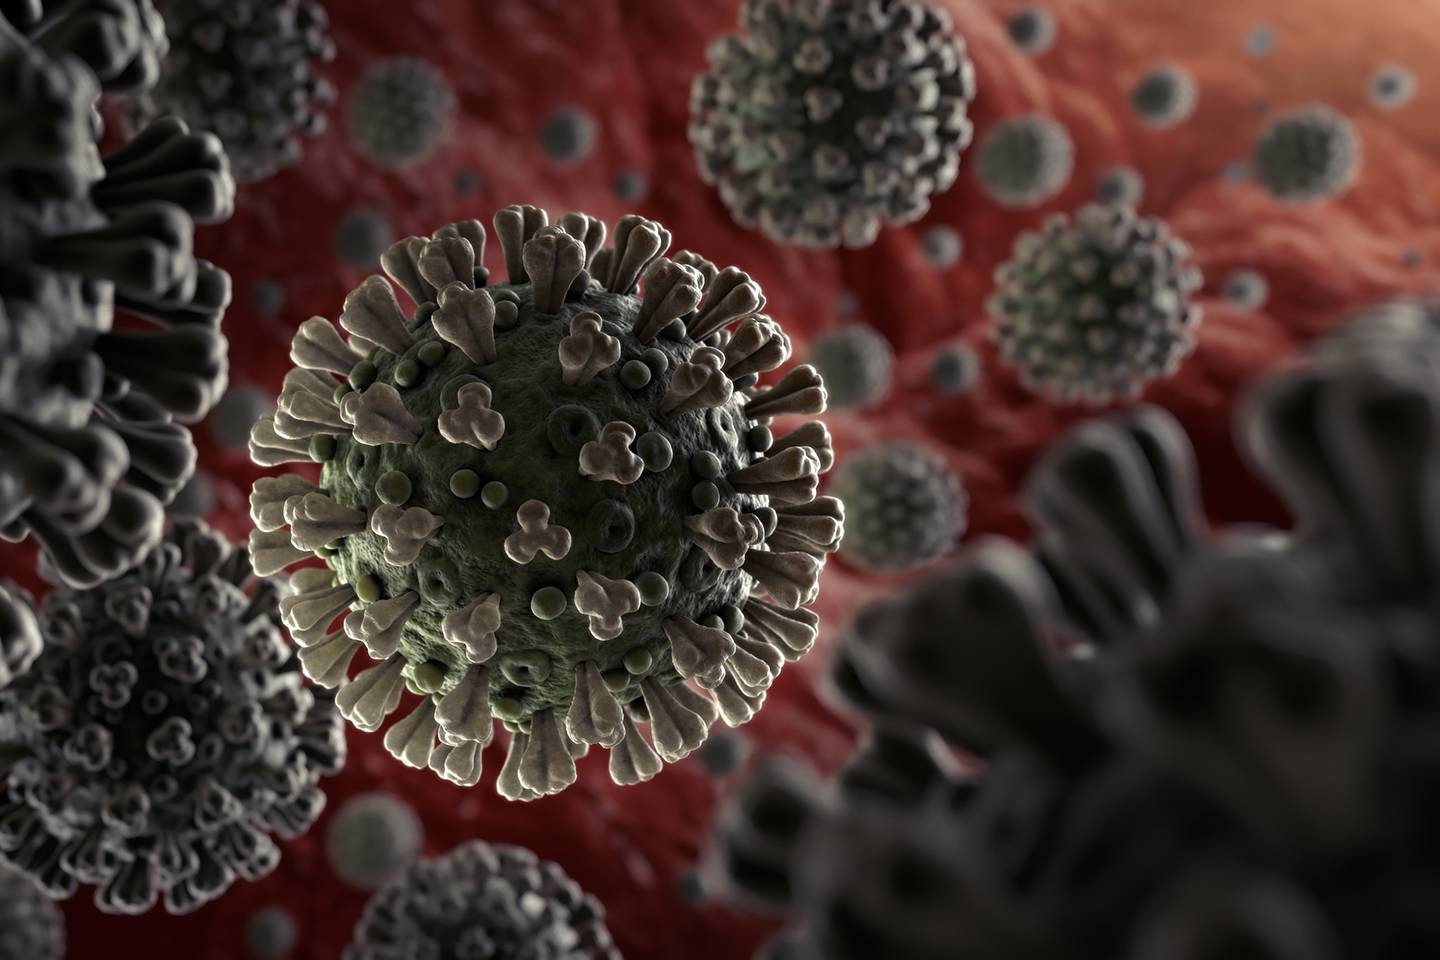 Un virólogo explica qué es lo que hace que el coronavirus sea tan mortal